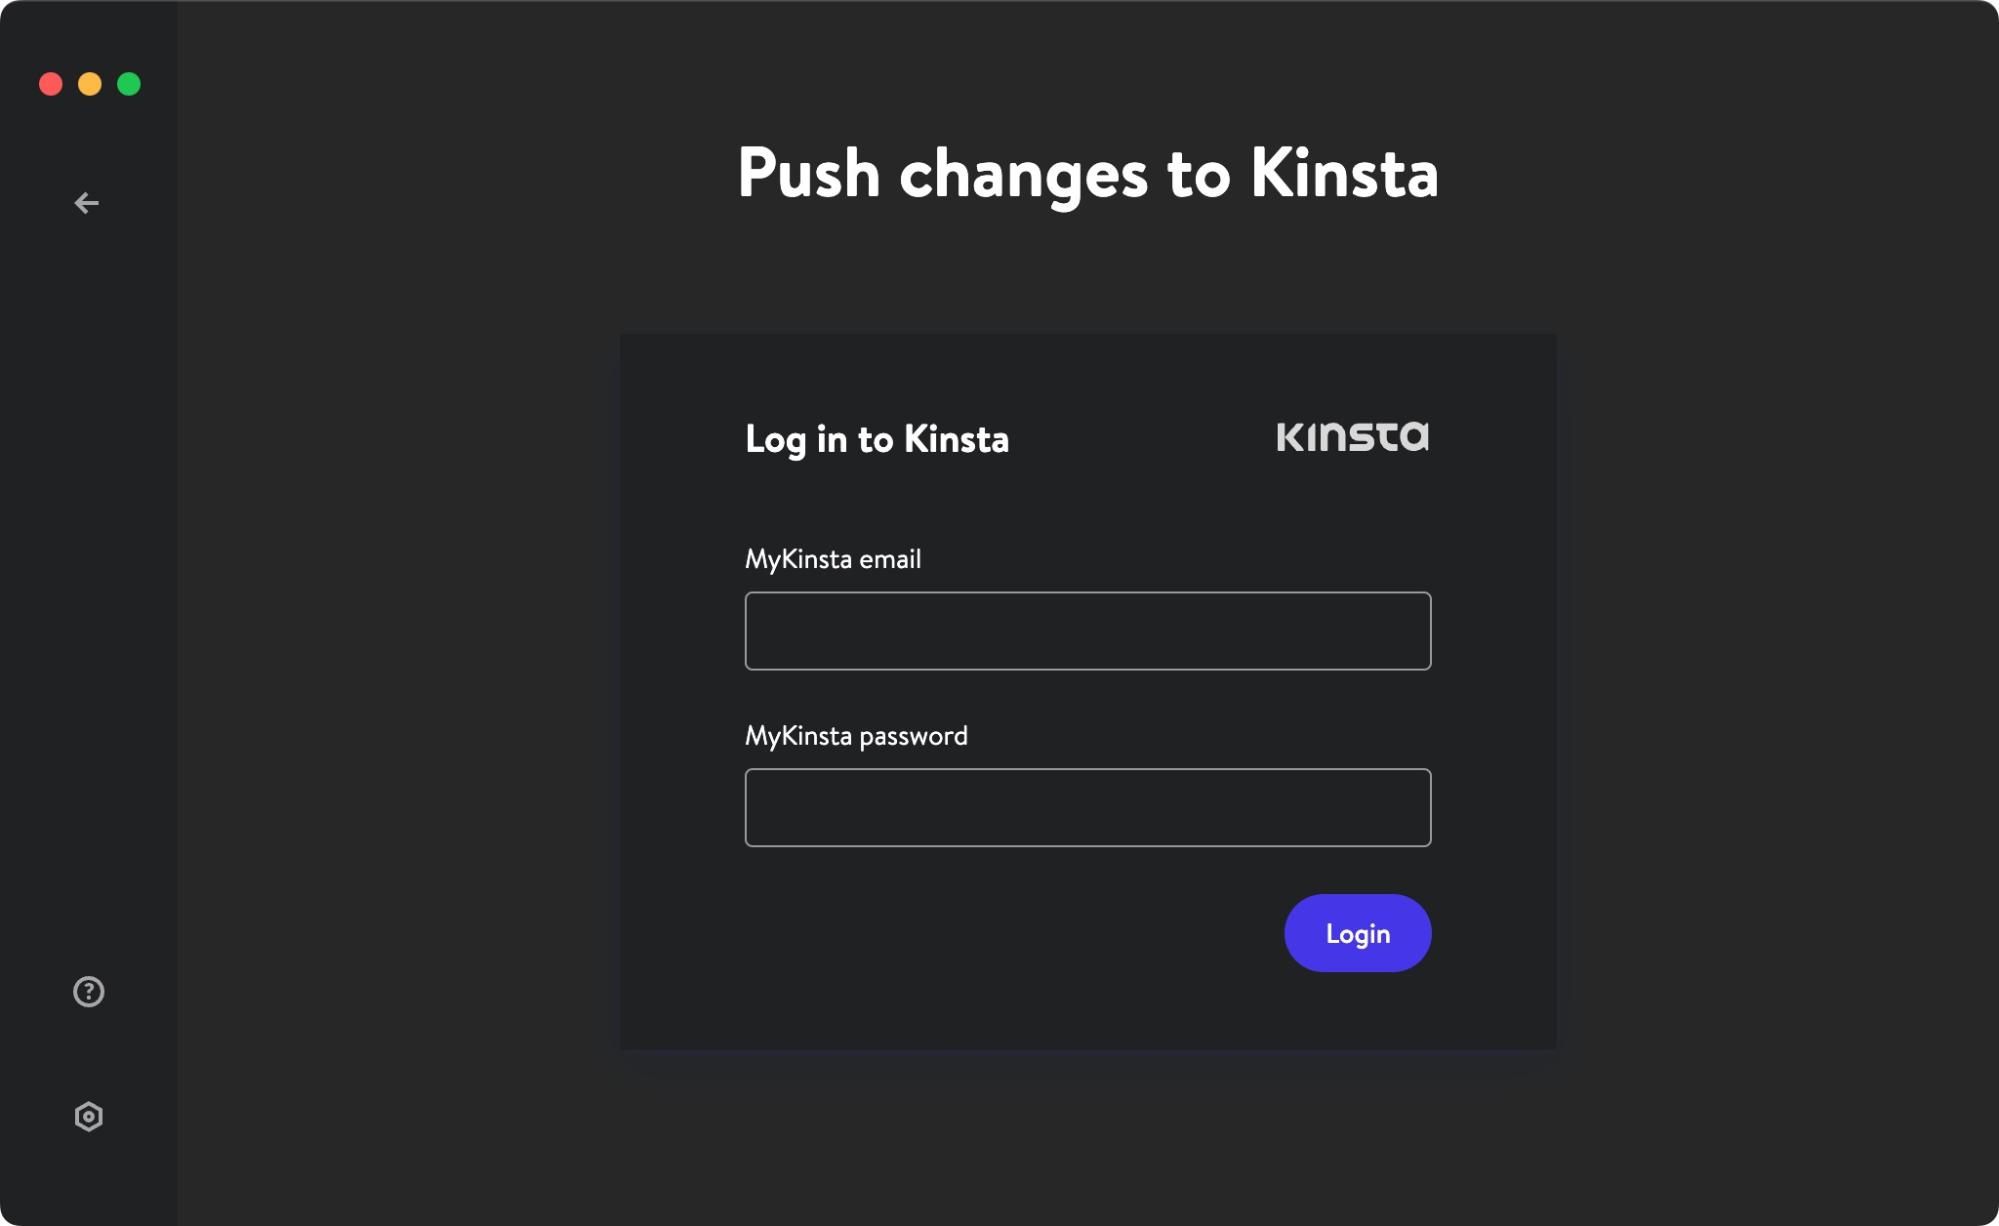 MyKinsta push changes to Kinsta